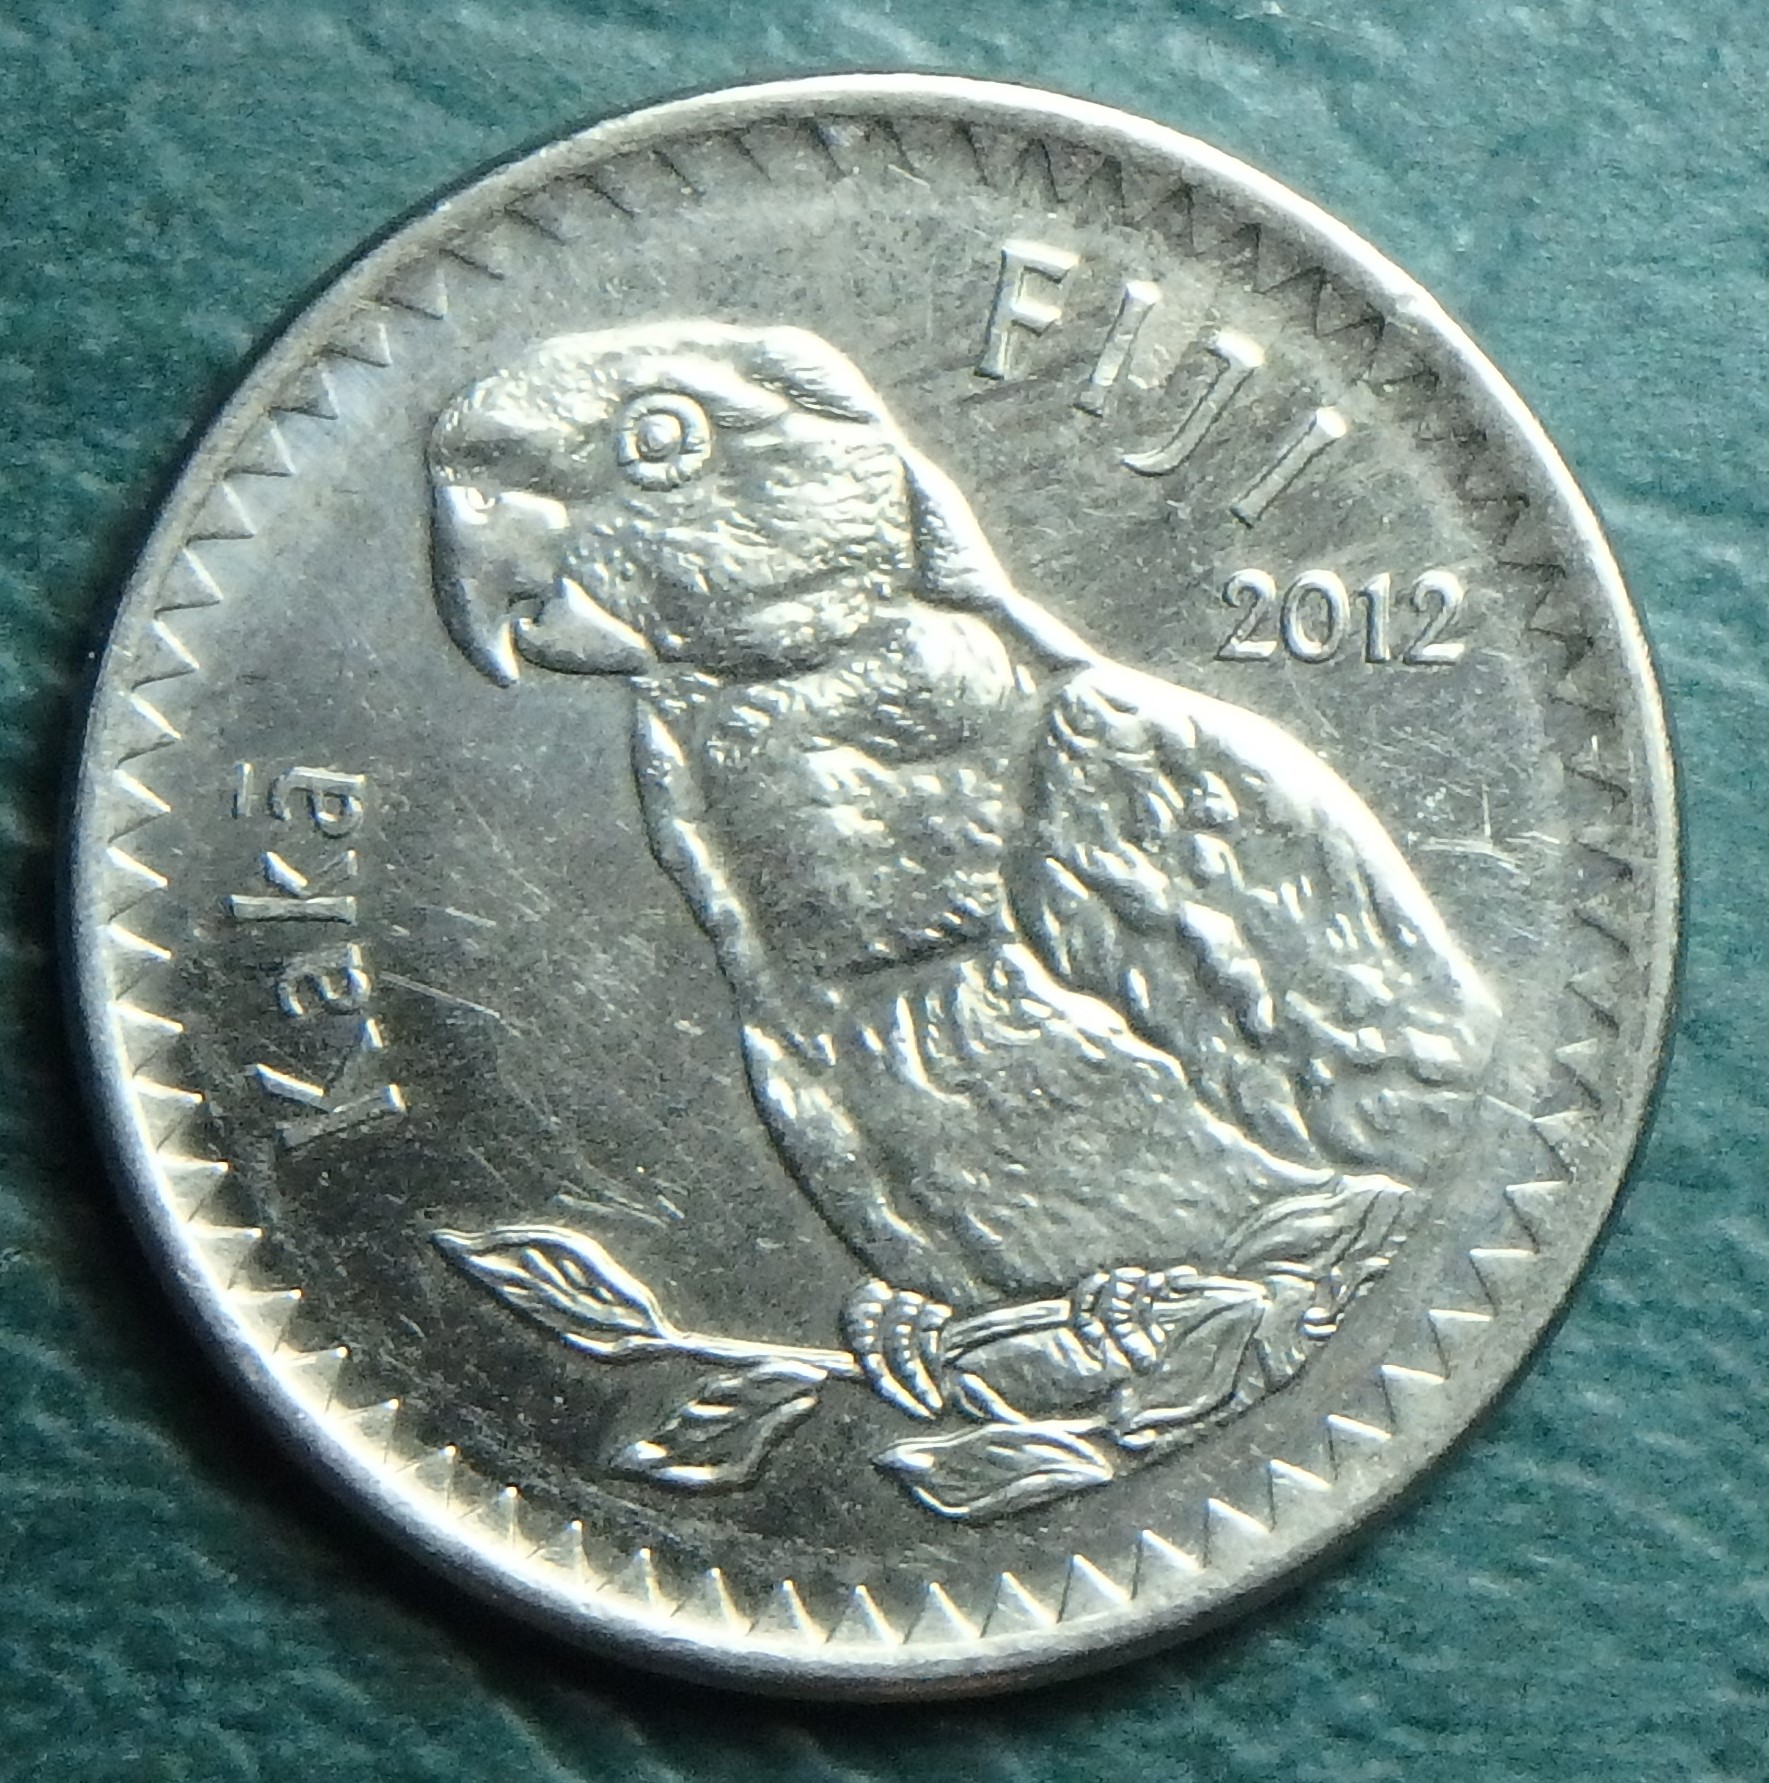 2012 FJ 20 cents obv.JPG